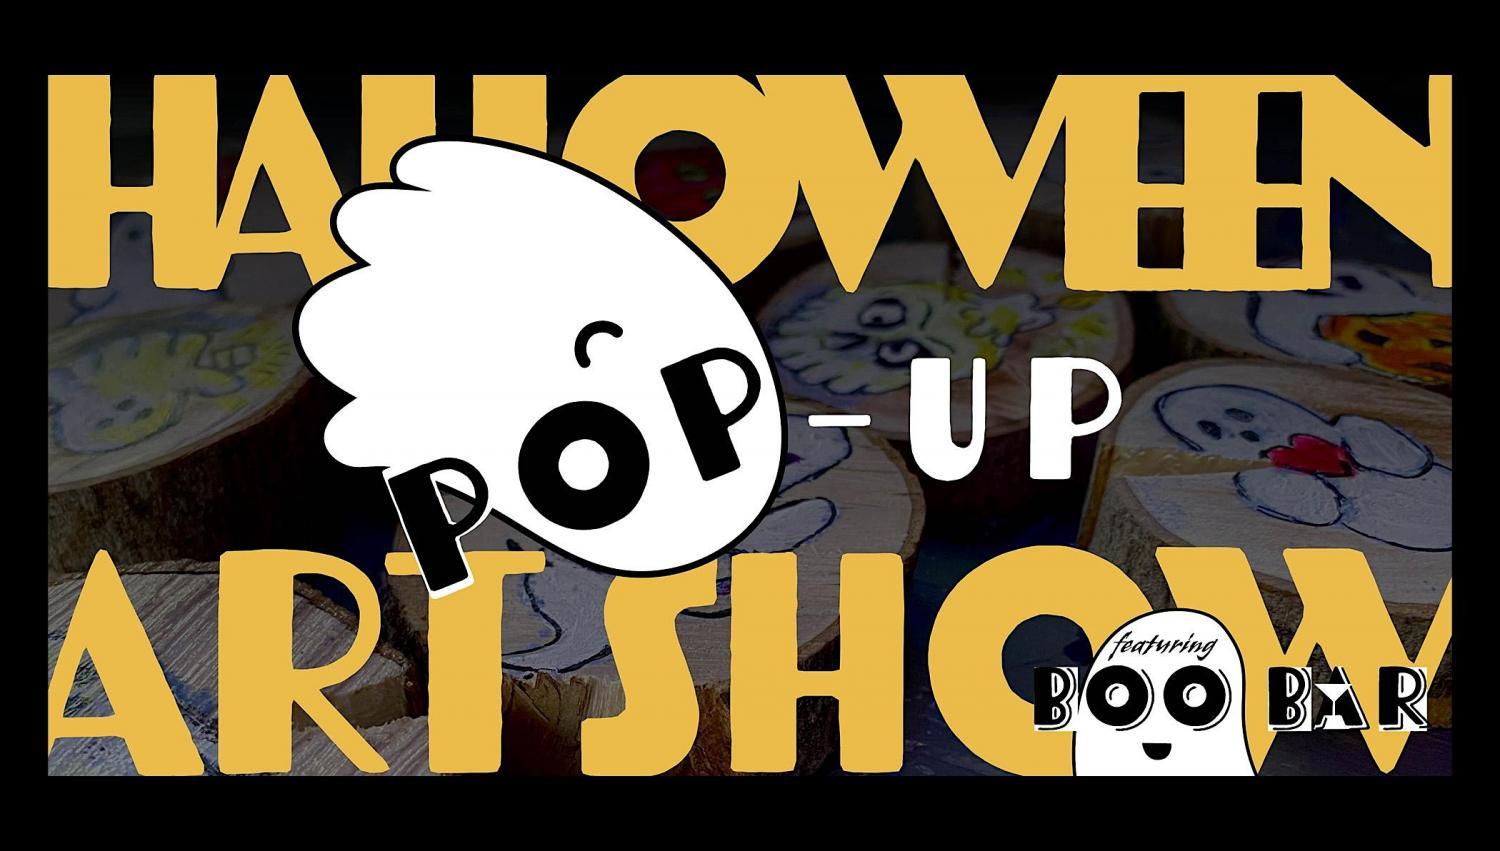 Halloween Pop-Up Art Show
Sun Oct 23, 7:00 PM - Sun Oct 23, 7:00 PM
in 4 days